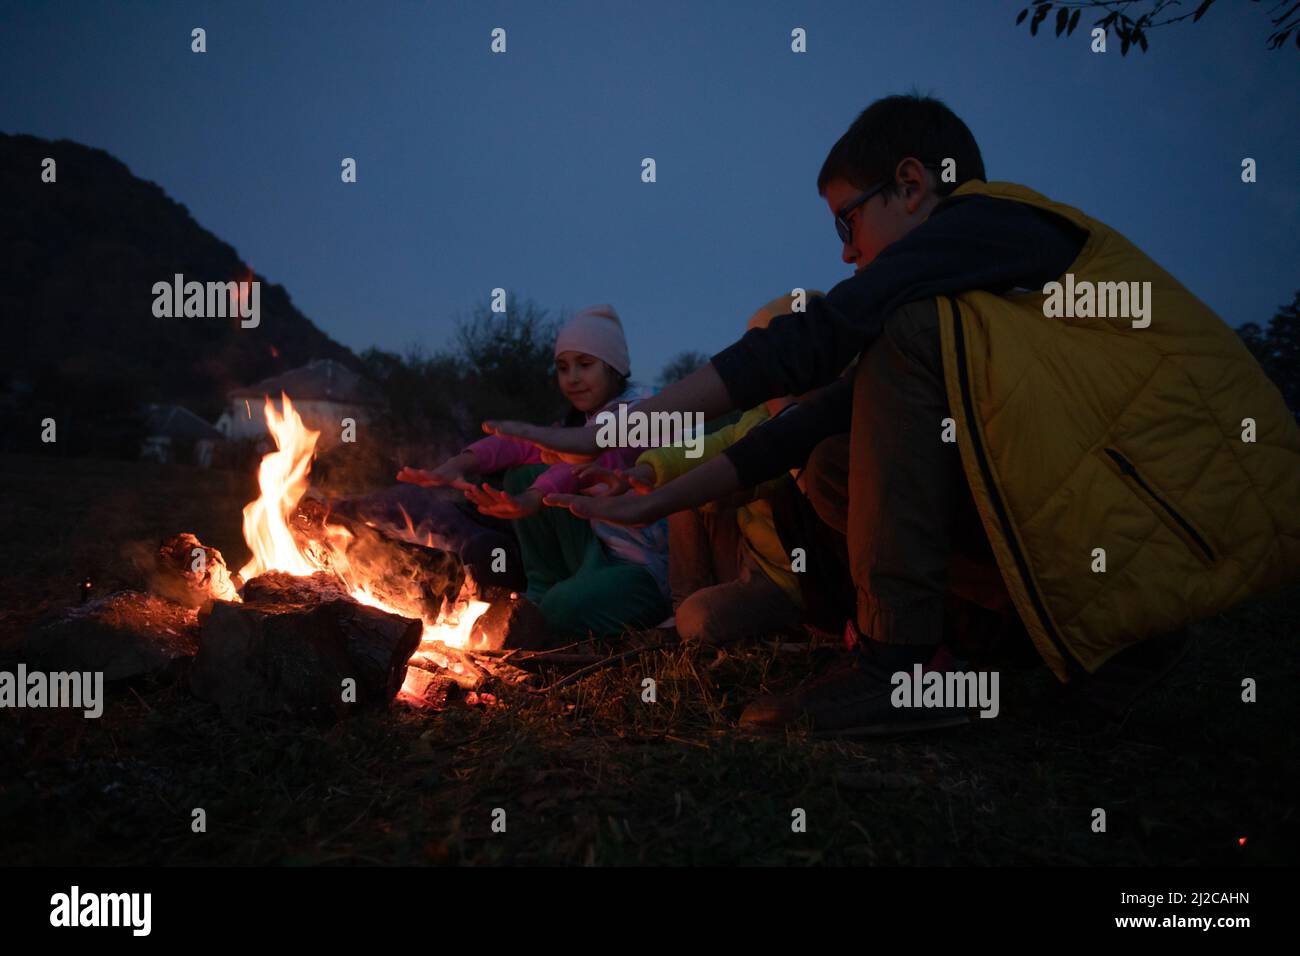 Kinder nach dem Wandern machen ein Picknick - eine Gruppe von glücklichen Freunden, die am Lagerfeuer Würstchen braten Stockfoto